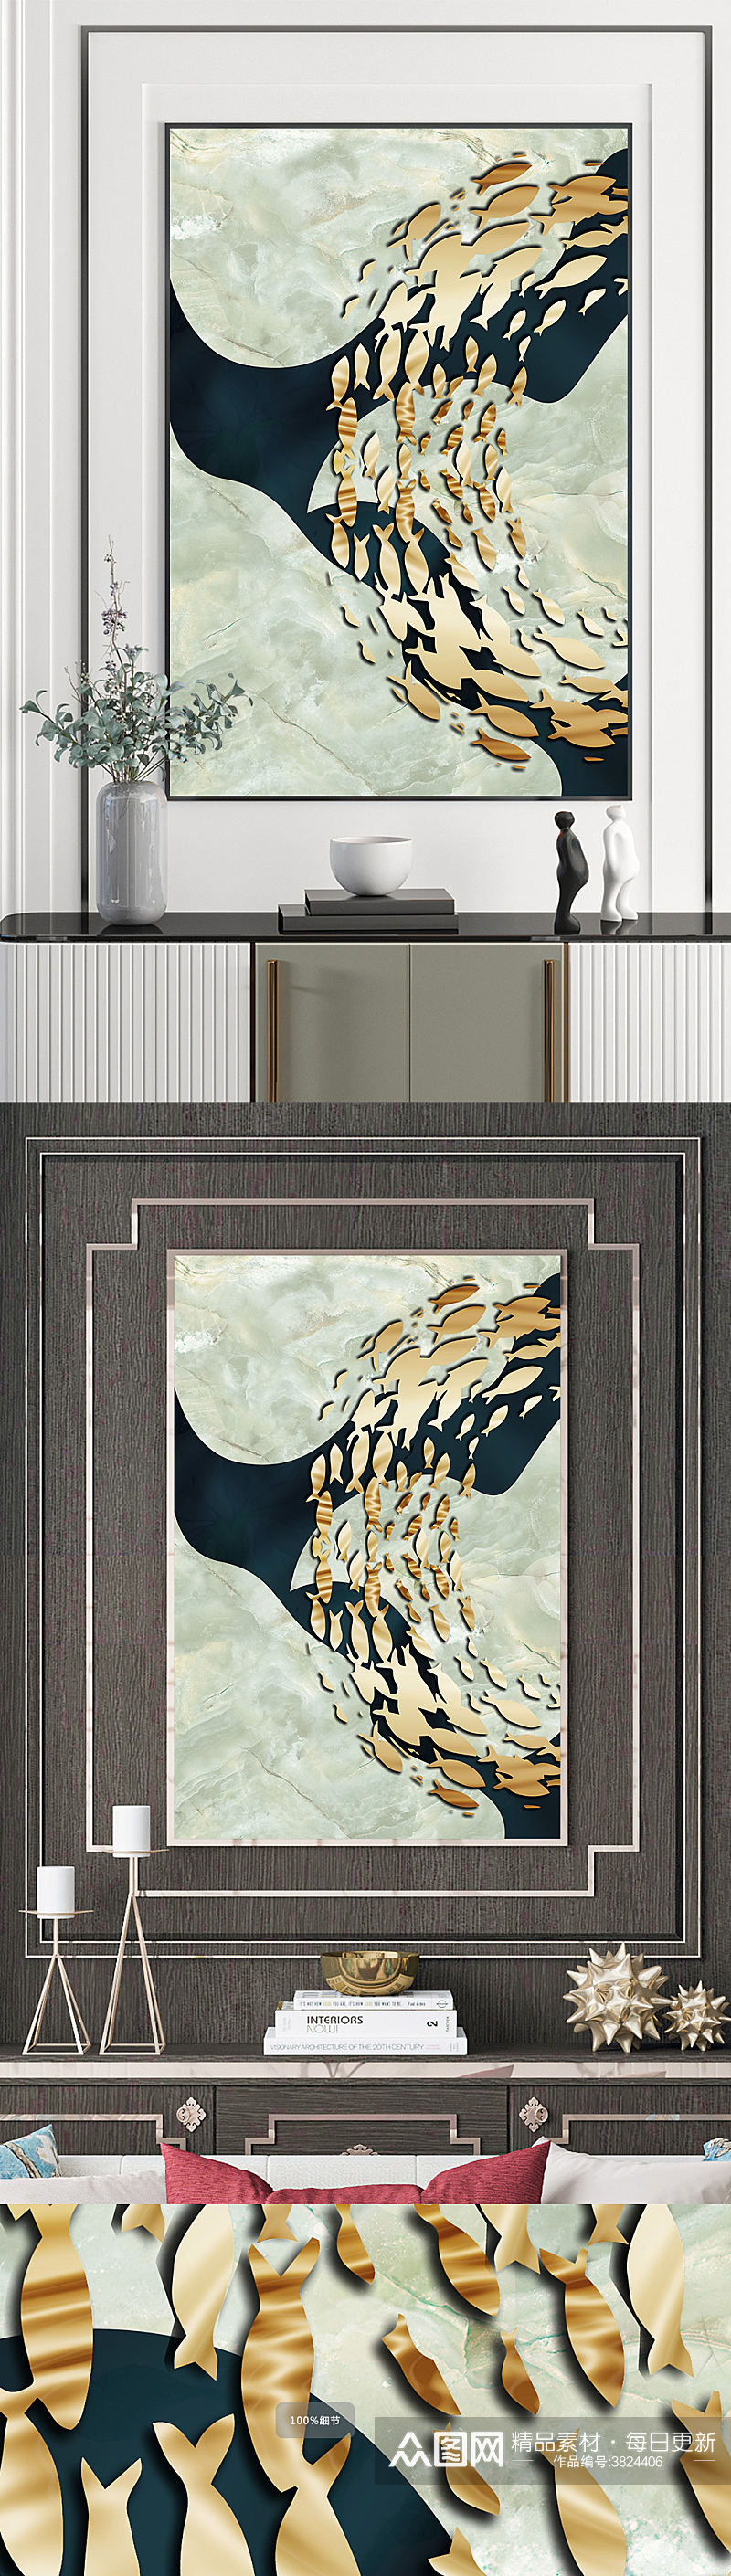 抽象鱼群线条晕染纹理鎏金色块装饰画素材